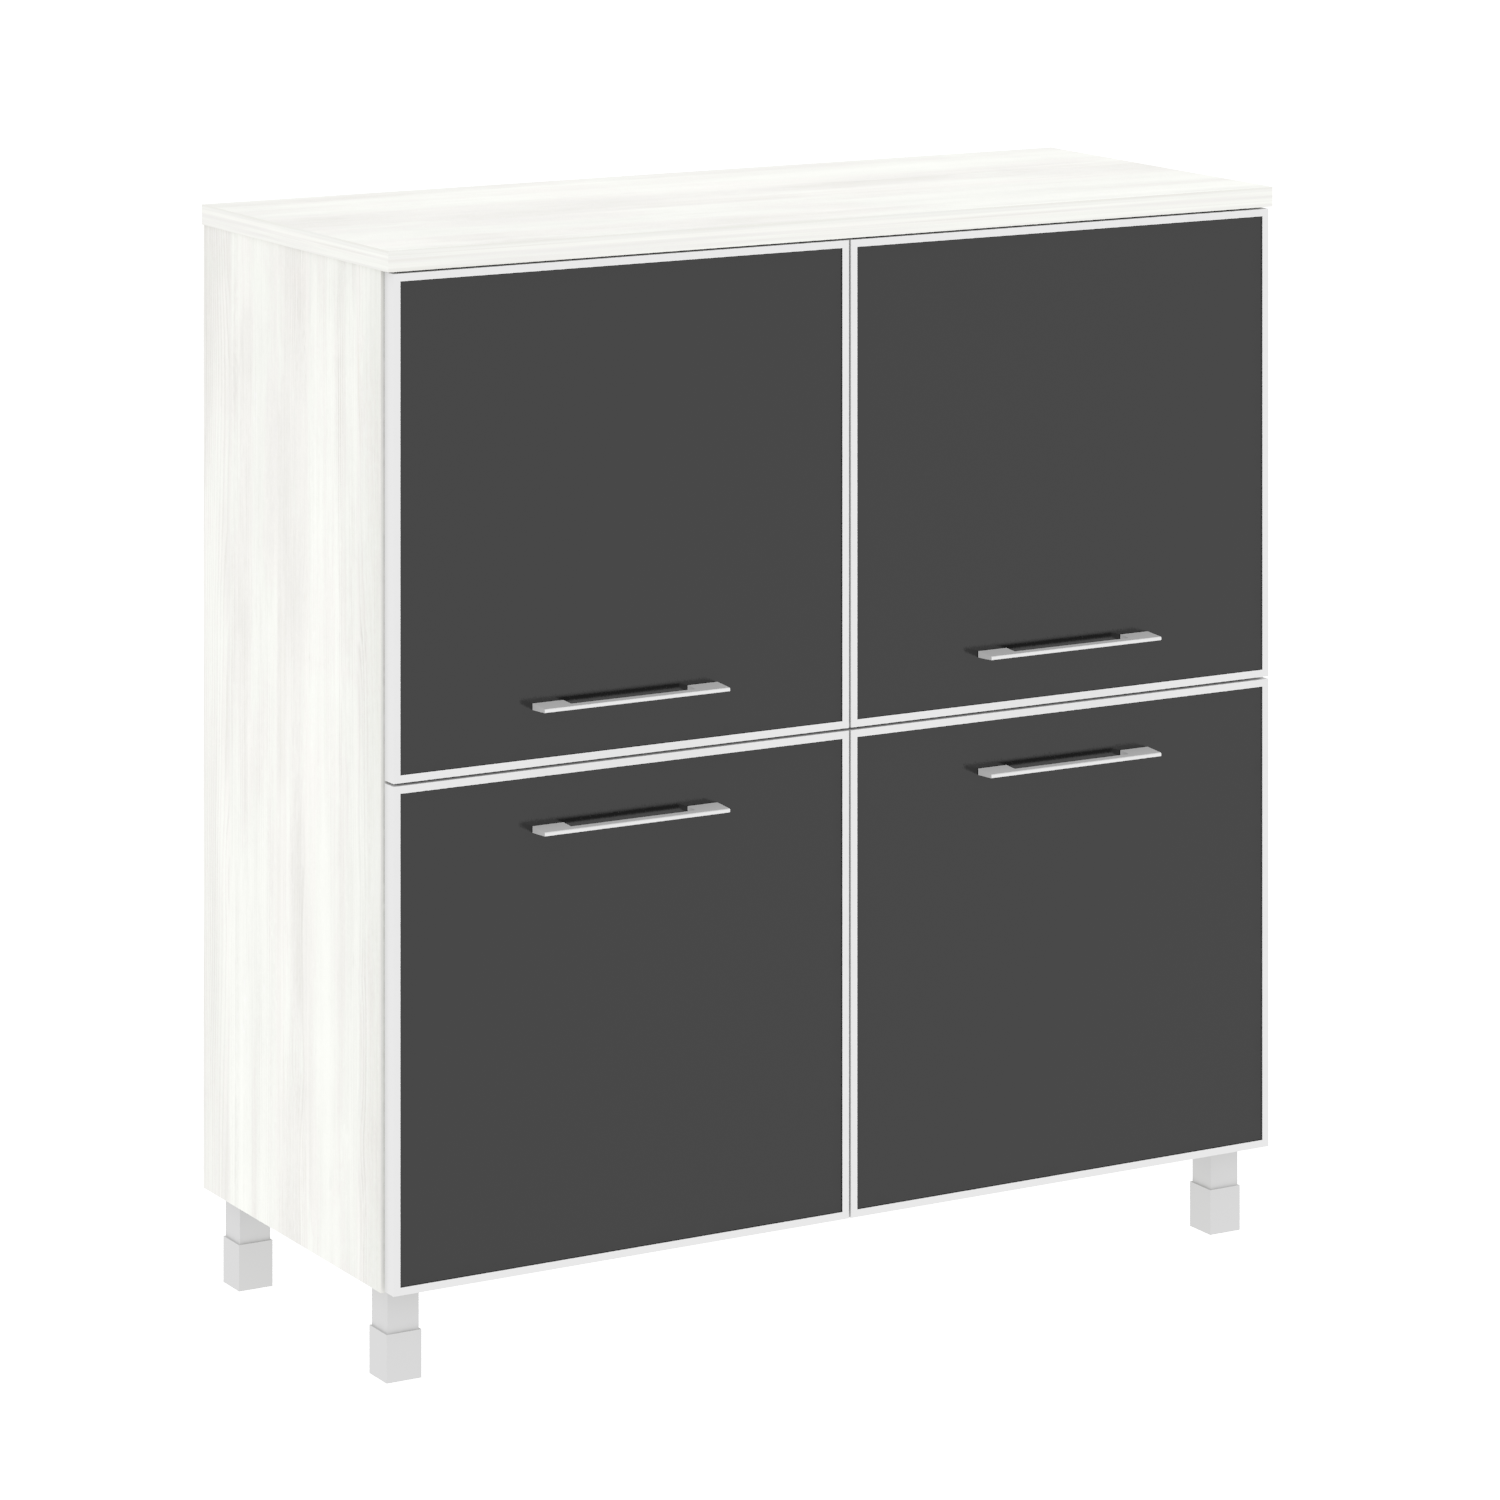 Шкаф четырехсекционный Yalta (черный/белый), LT.SD-1.2 R, рис. 5